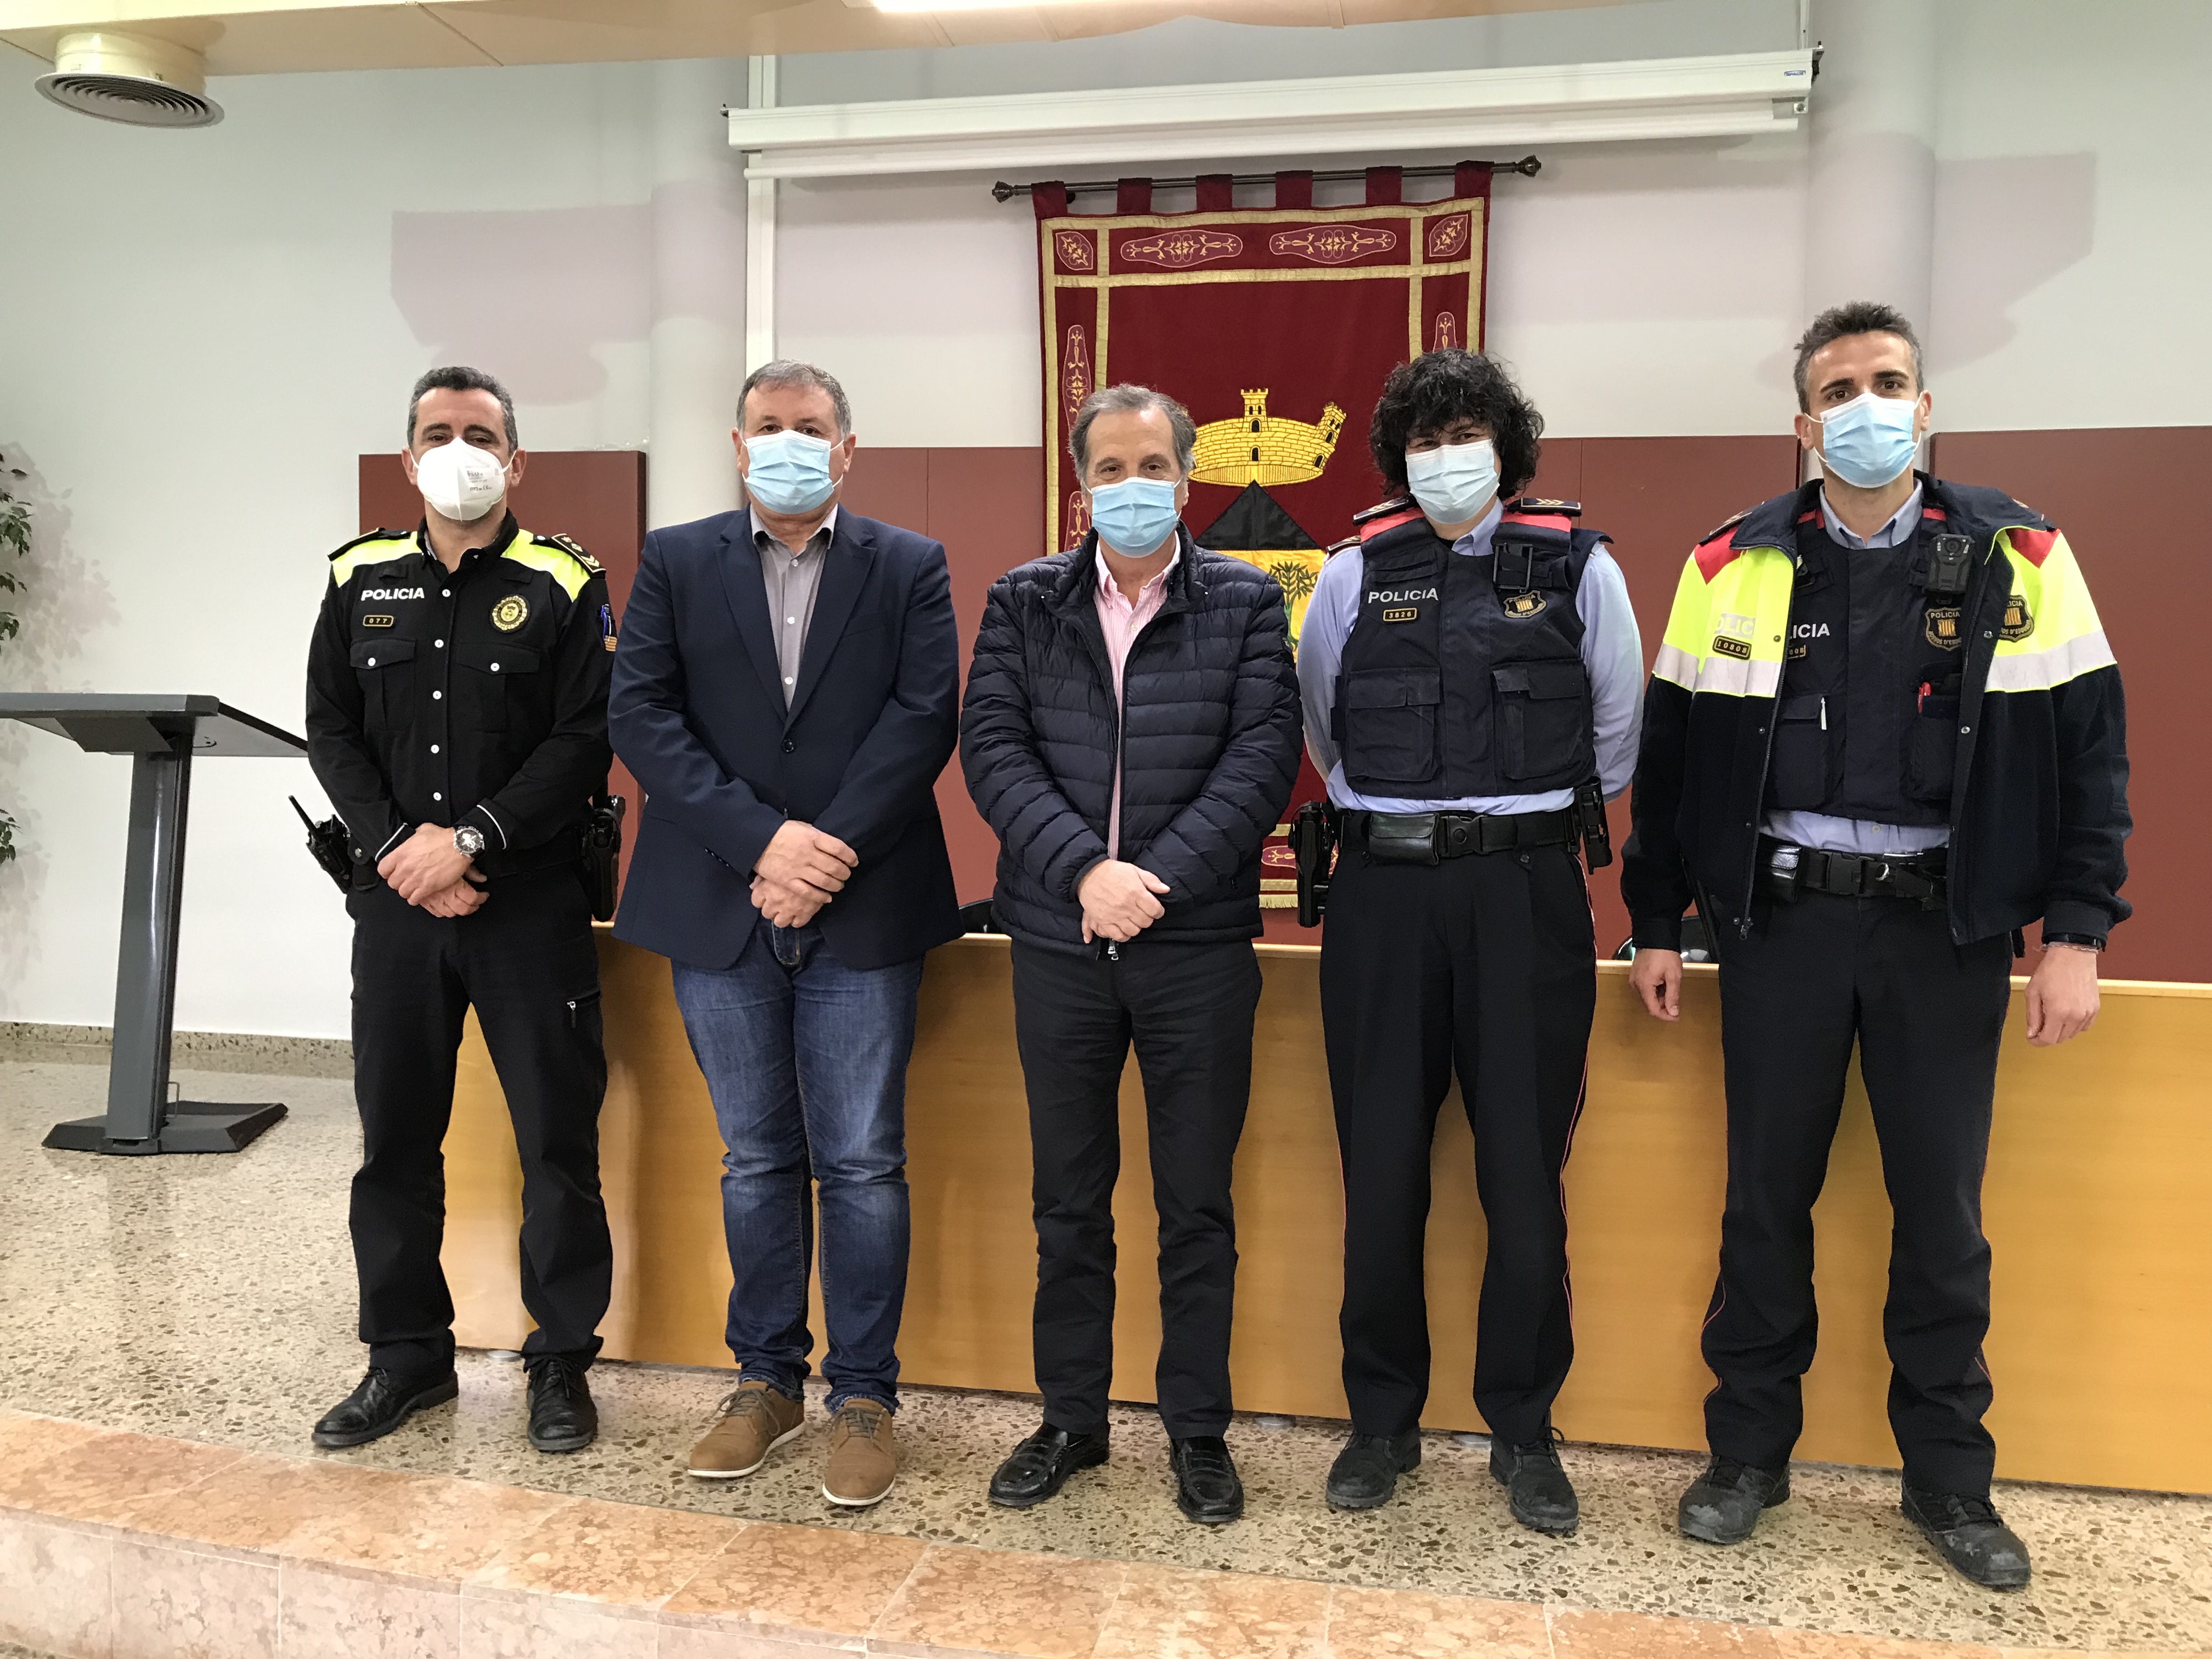 La Policia Local de Vandellòs i l’Hospitalet de l’Infant i els Mossos d’Esquadra col·laboren en la prevenció de furts